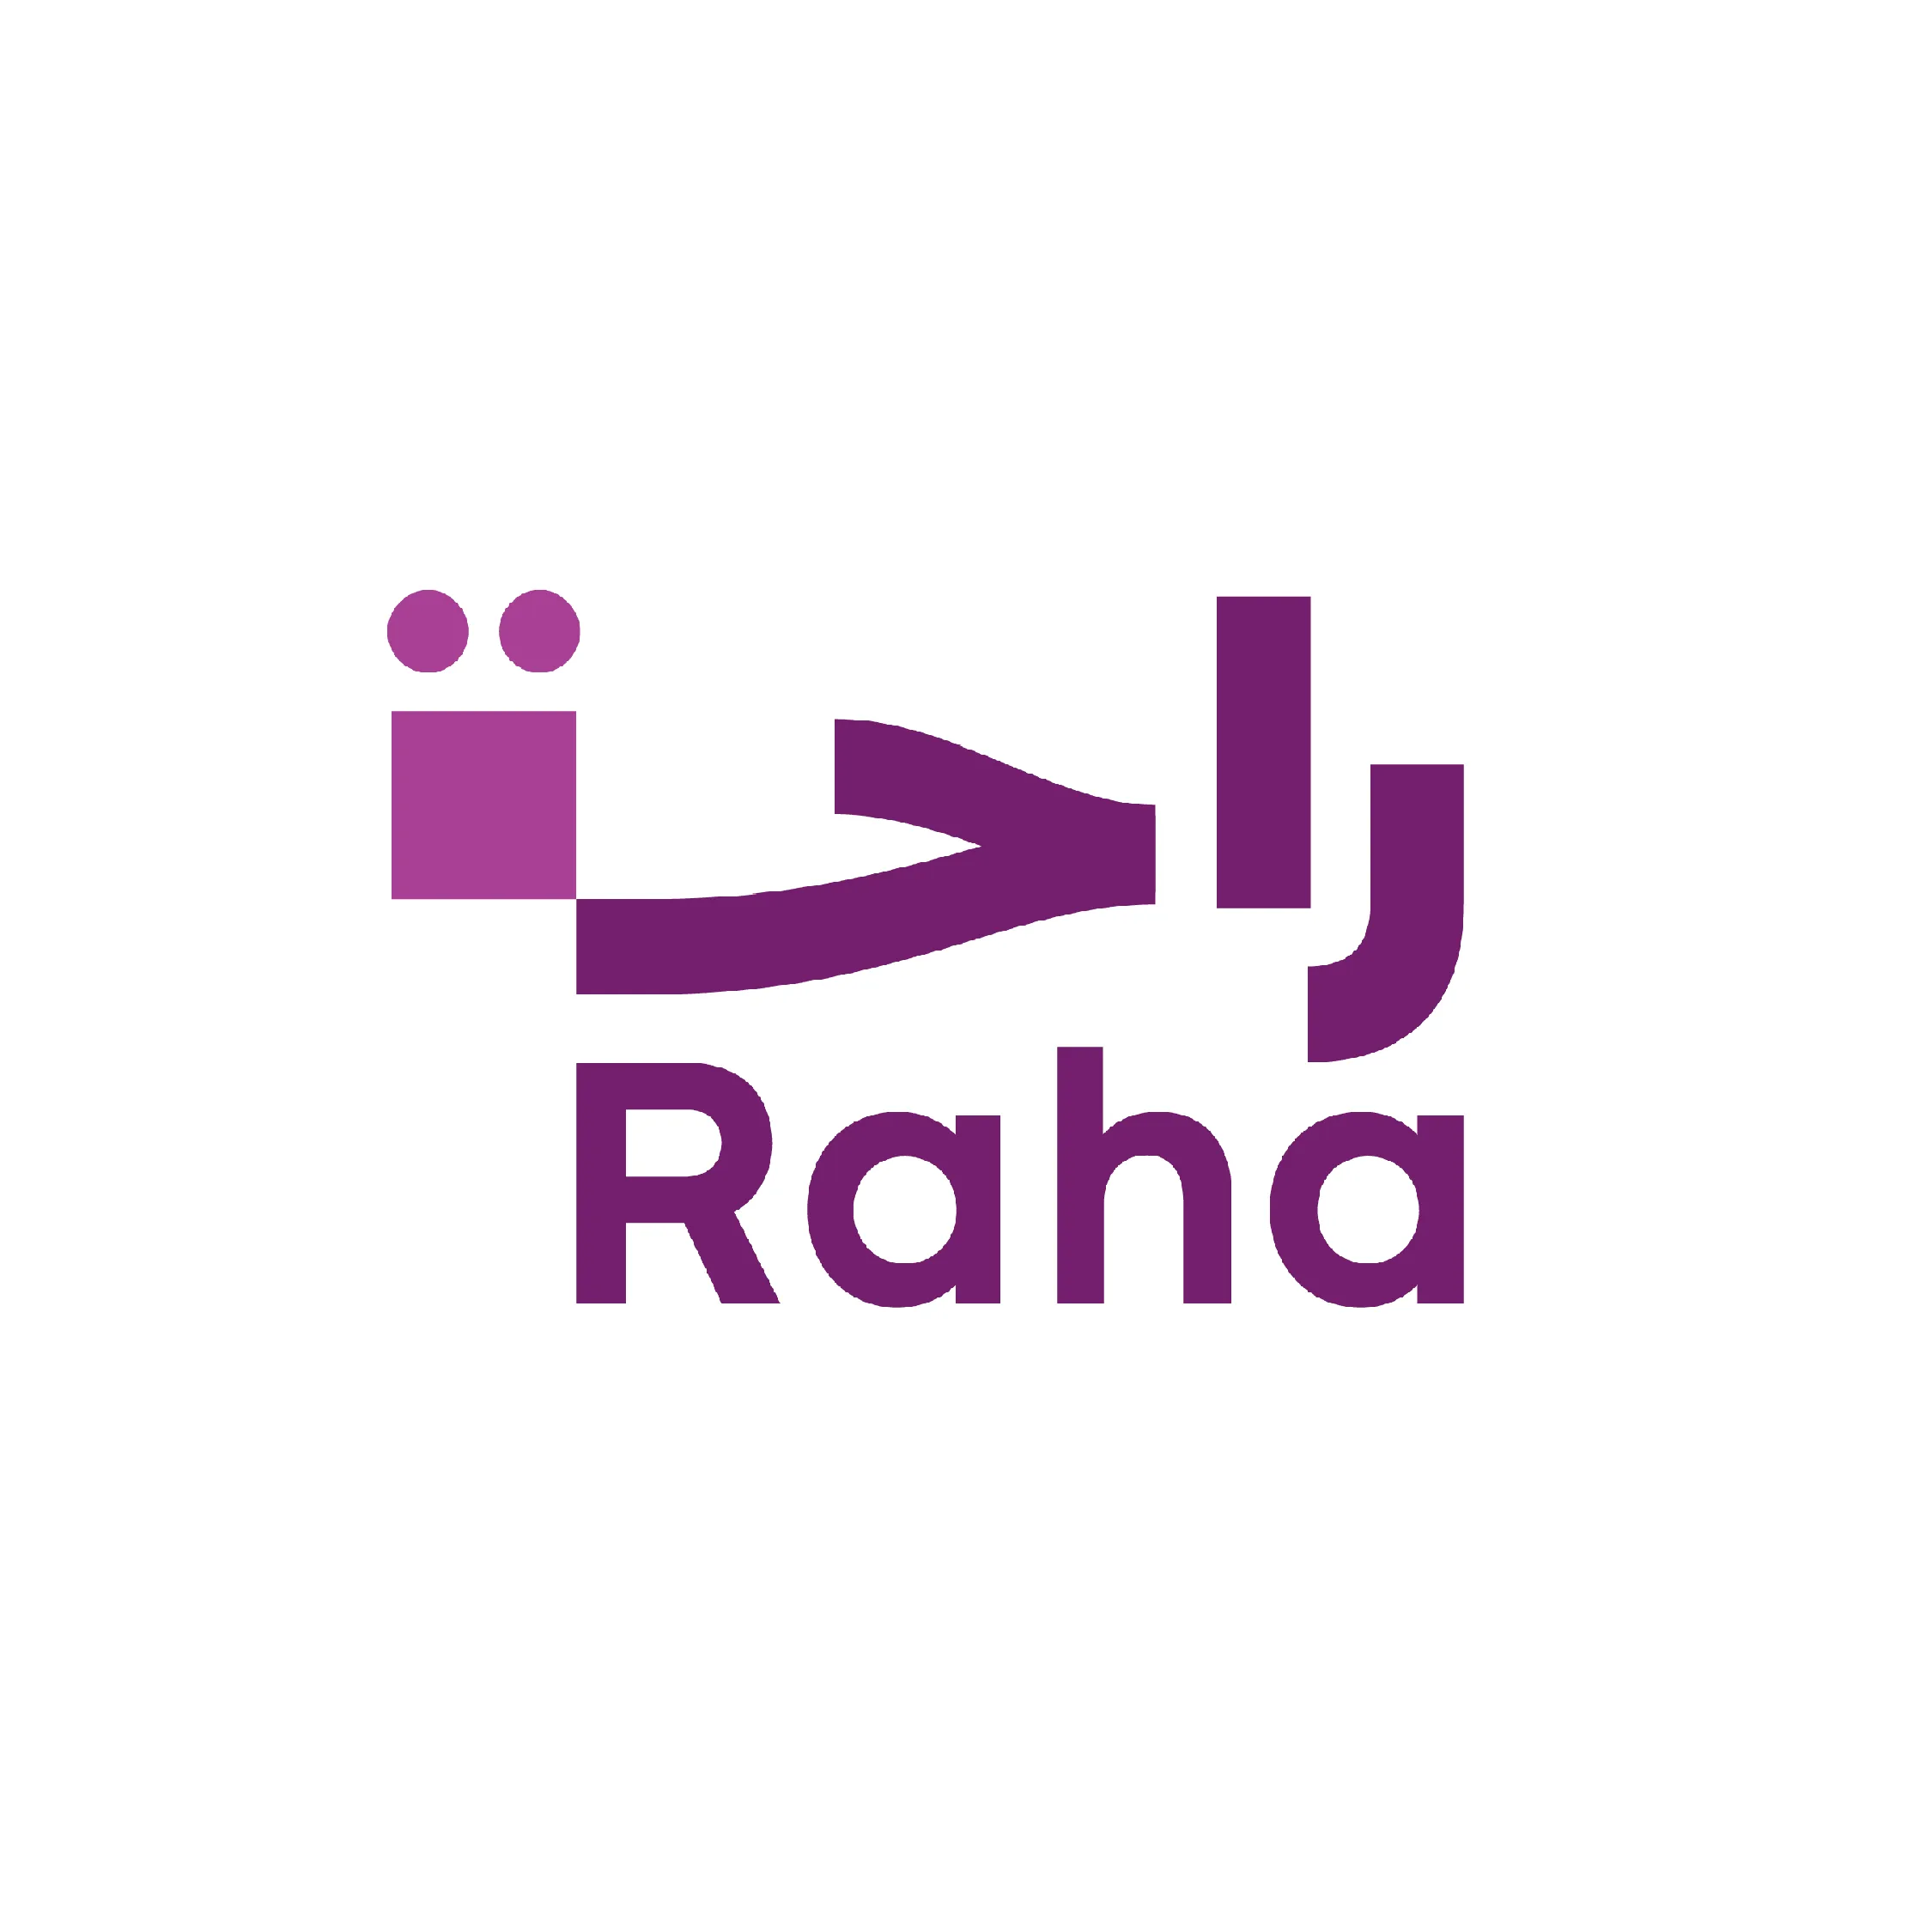 raha_logo-01